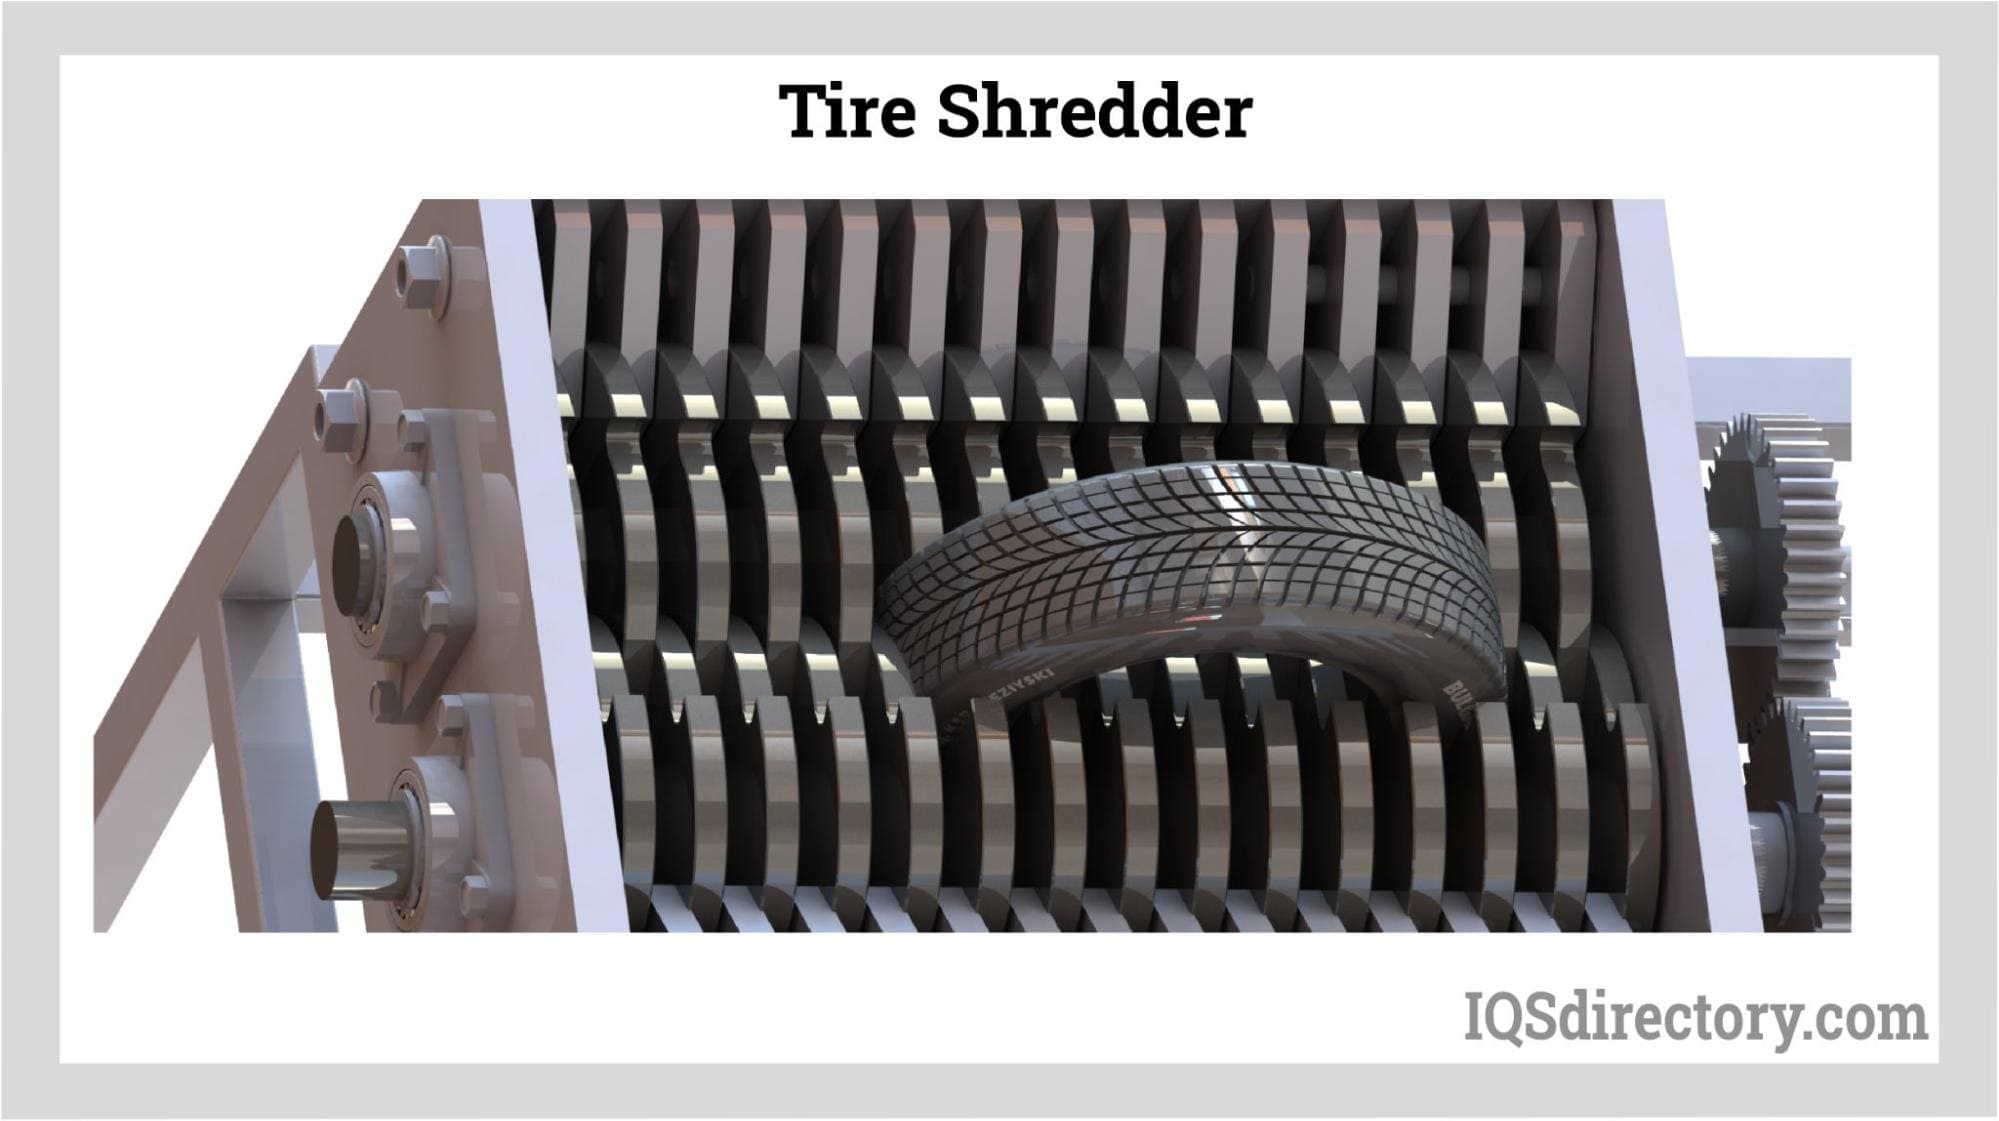 https://www.iqsdirectory.com/articles/shredder/tire-shredders/tire-shredder.jpg